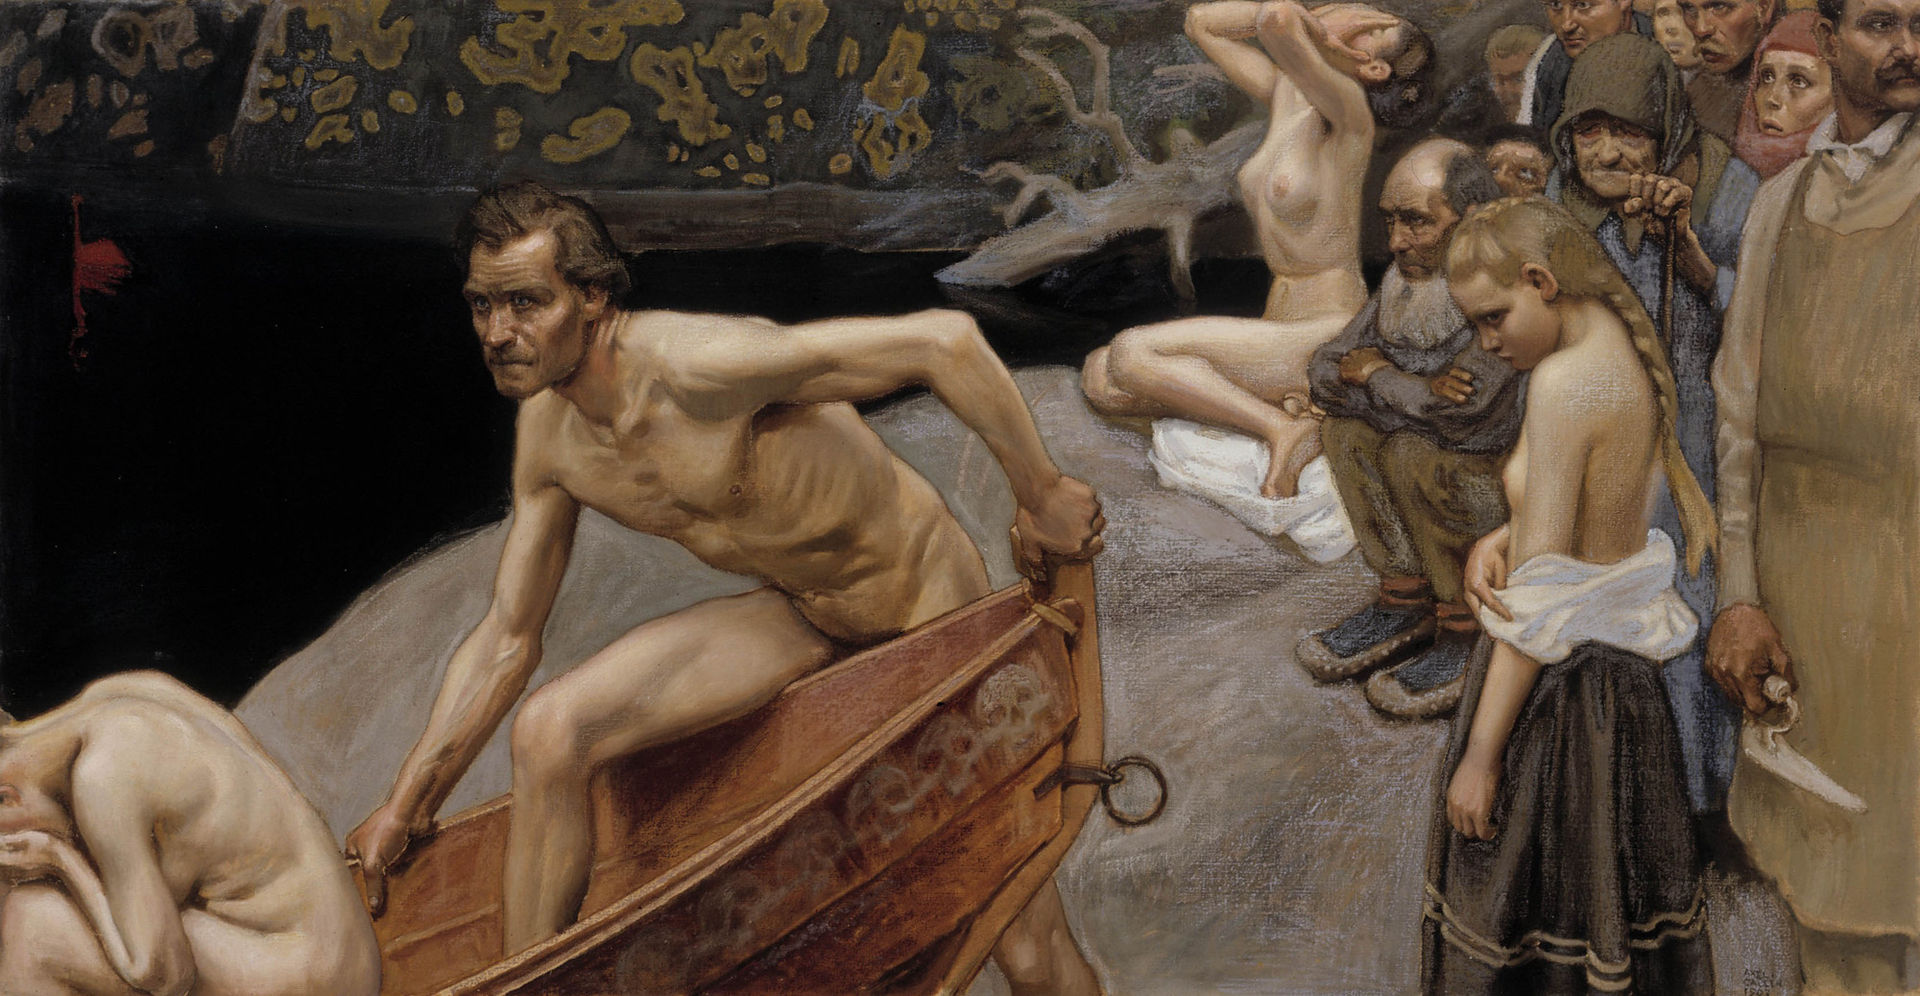 핀란드 화가 악셀리 갈렌 칼레라(1865~1931)의 1903년 프레스코화 ‘투오넬라 강가에서’ | 핀란드 국립 미술관 소장 ⓒ위키미디어 커먼스